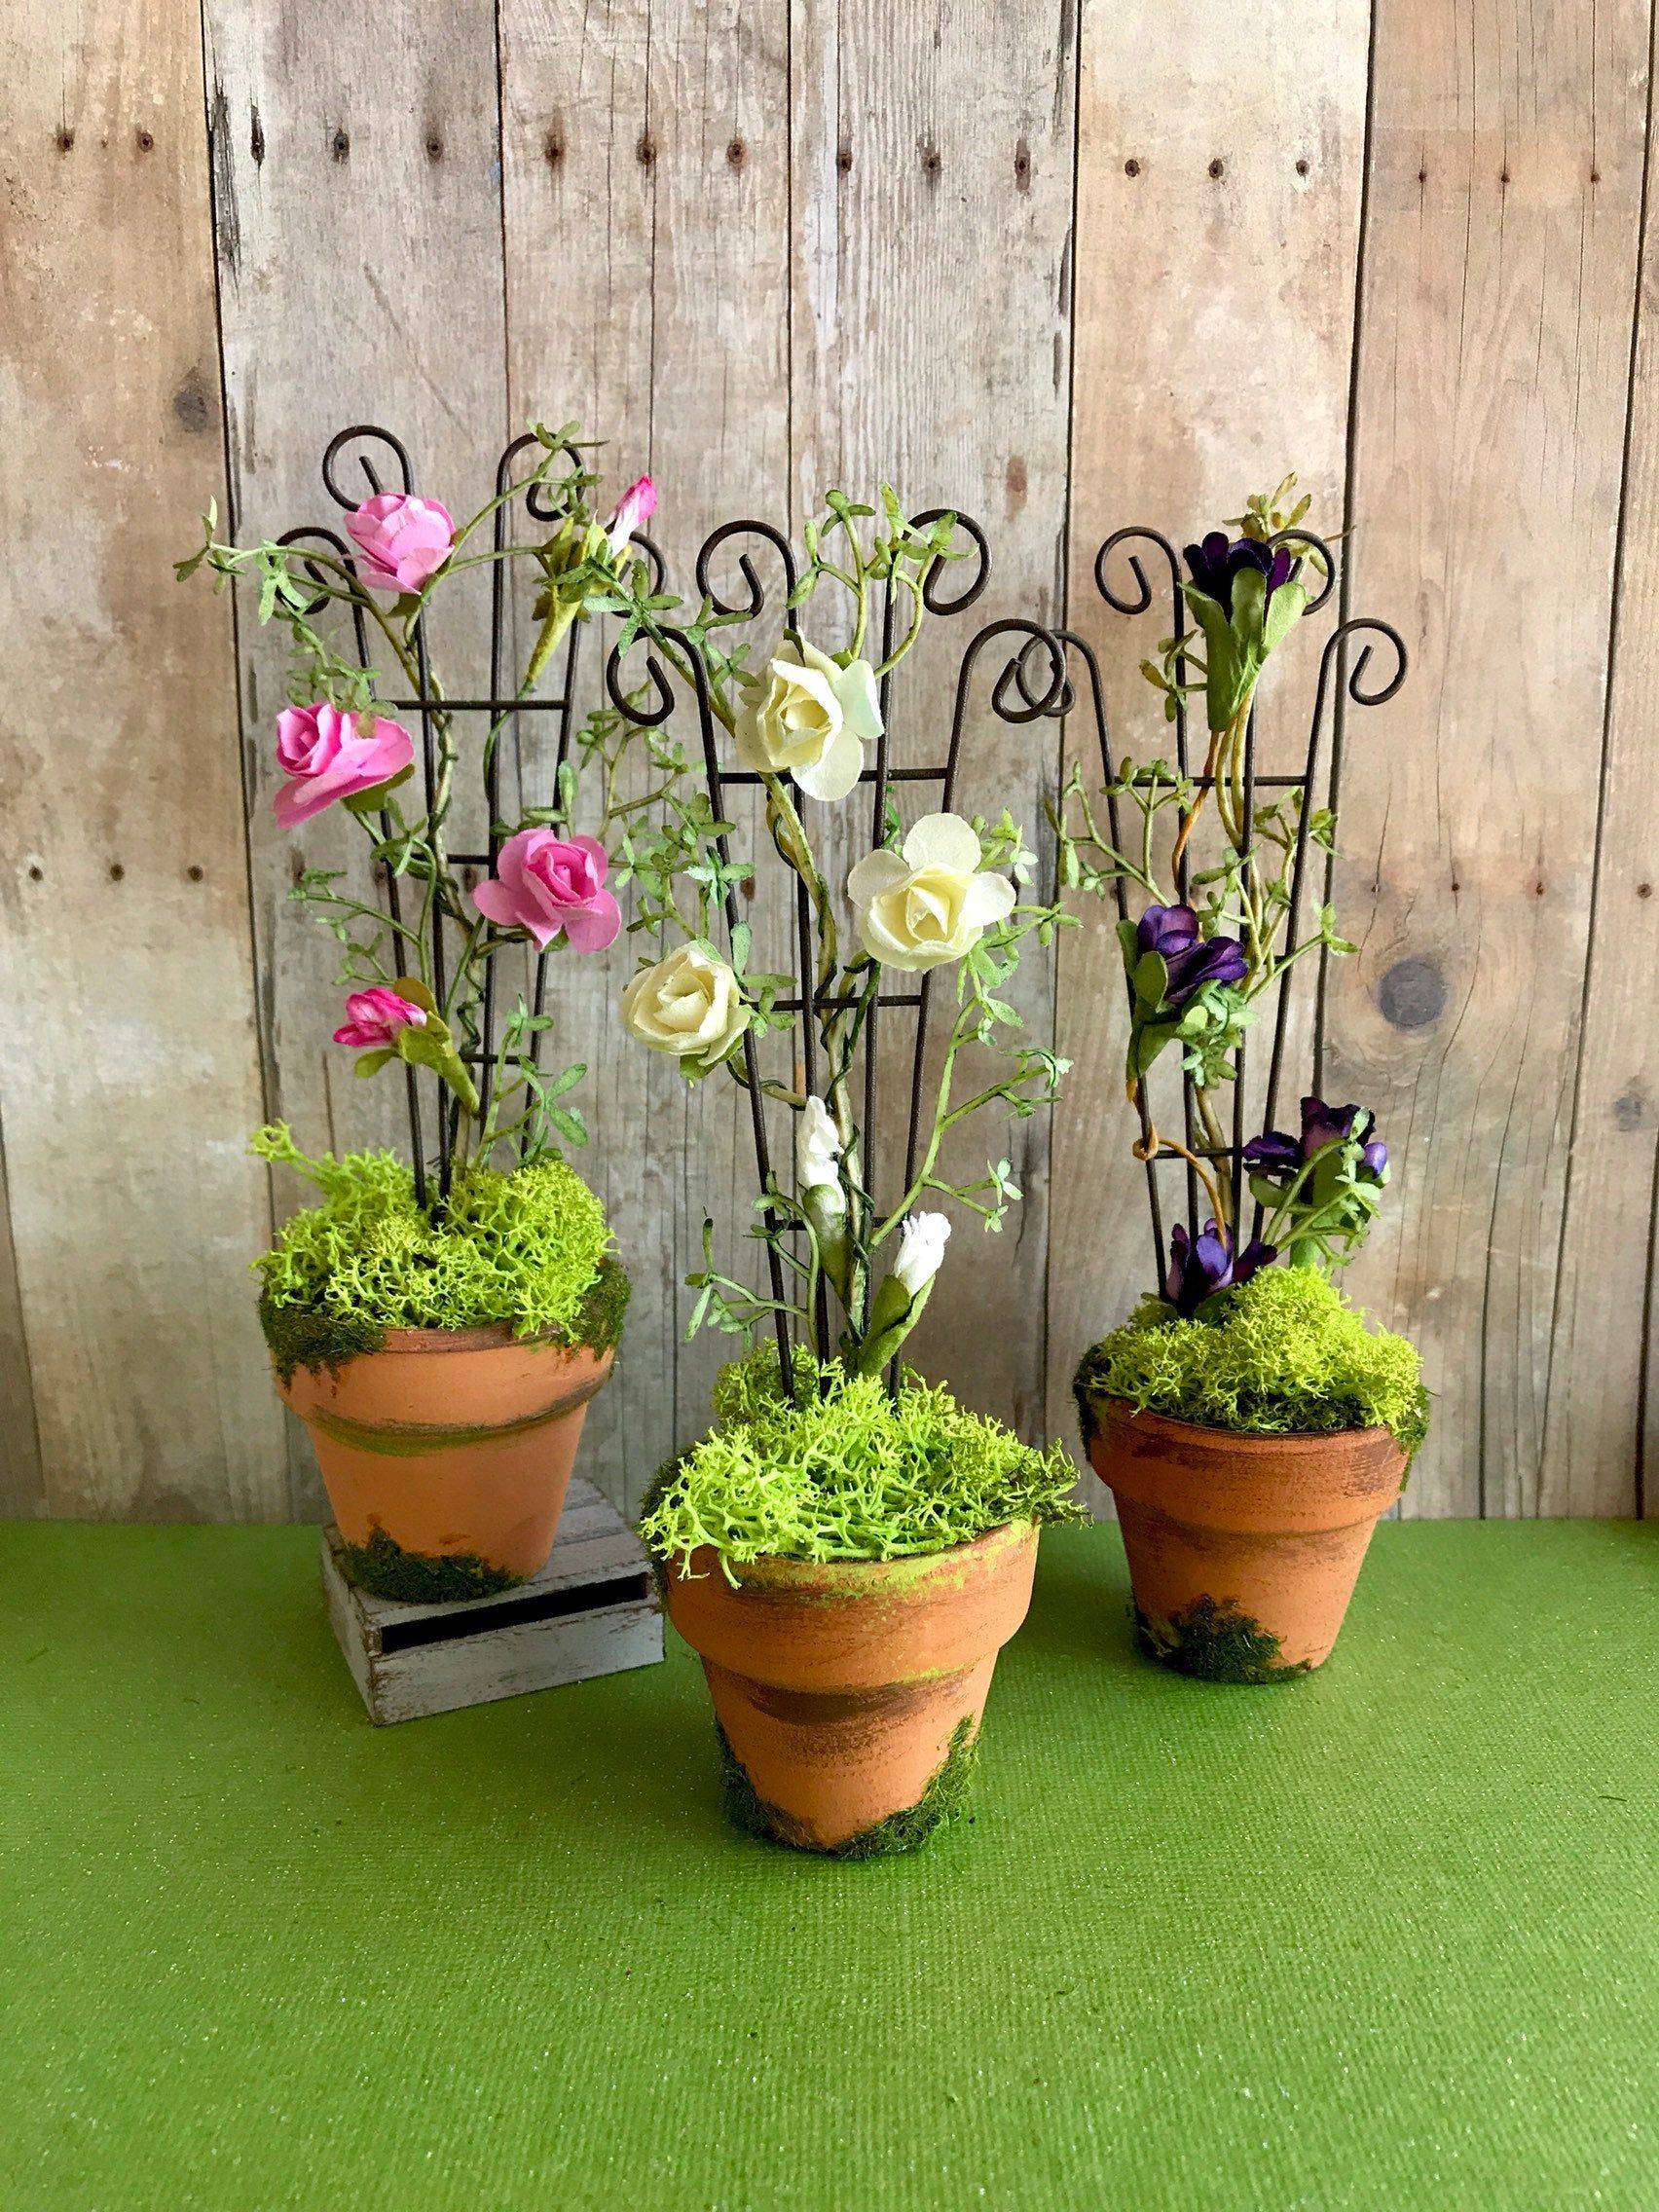 Miniature Rose Garden Ideas Photograph Way